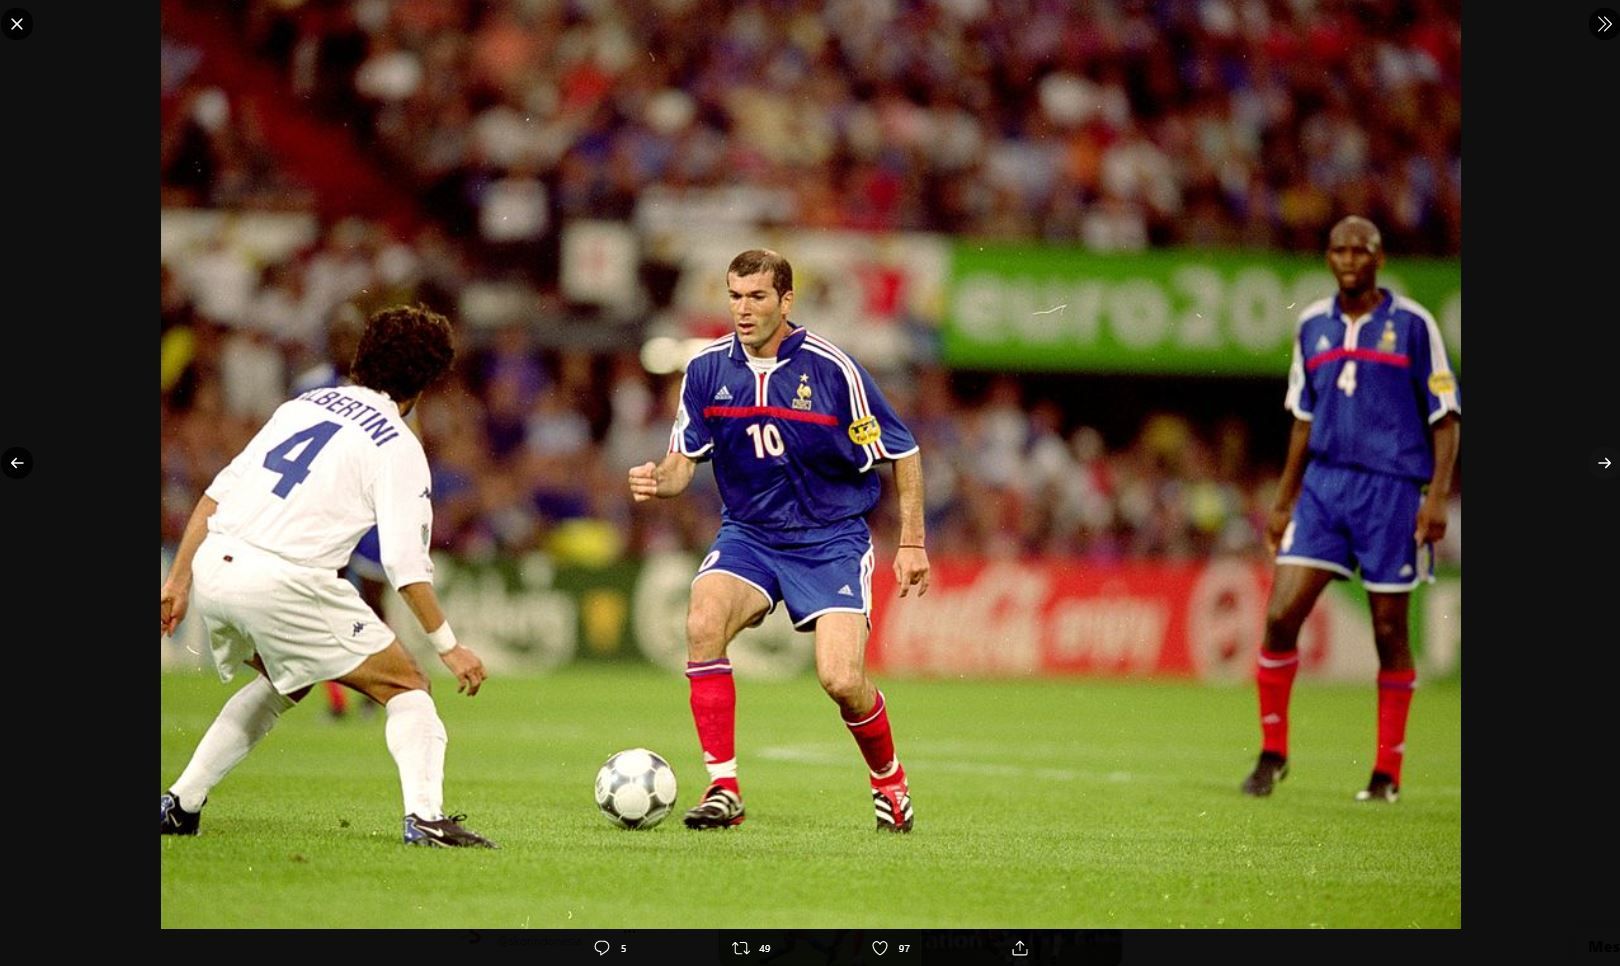 Zinedine Zidane (tengah) saat tampil pada ajang Piala Eropa 2000 (Euro 2000).